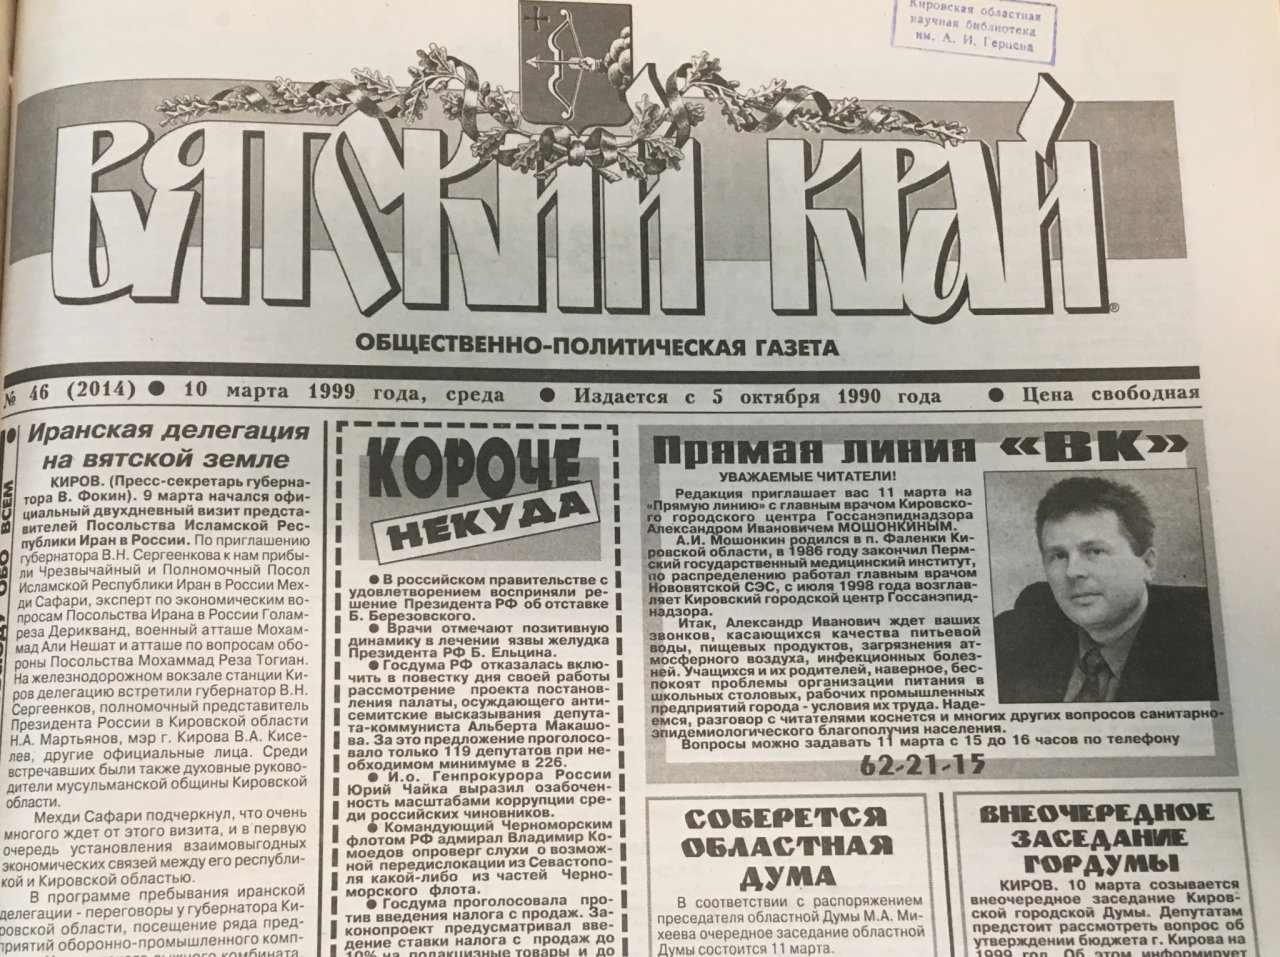 "Такого снега не было 170 лет": о чем писали кировские газеты 20 лет назад?